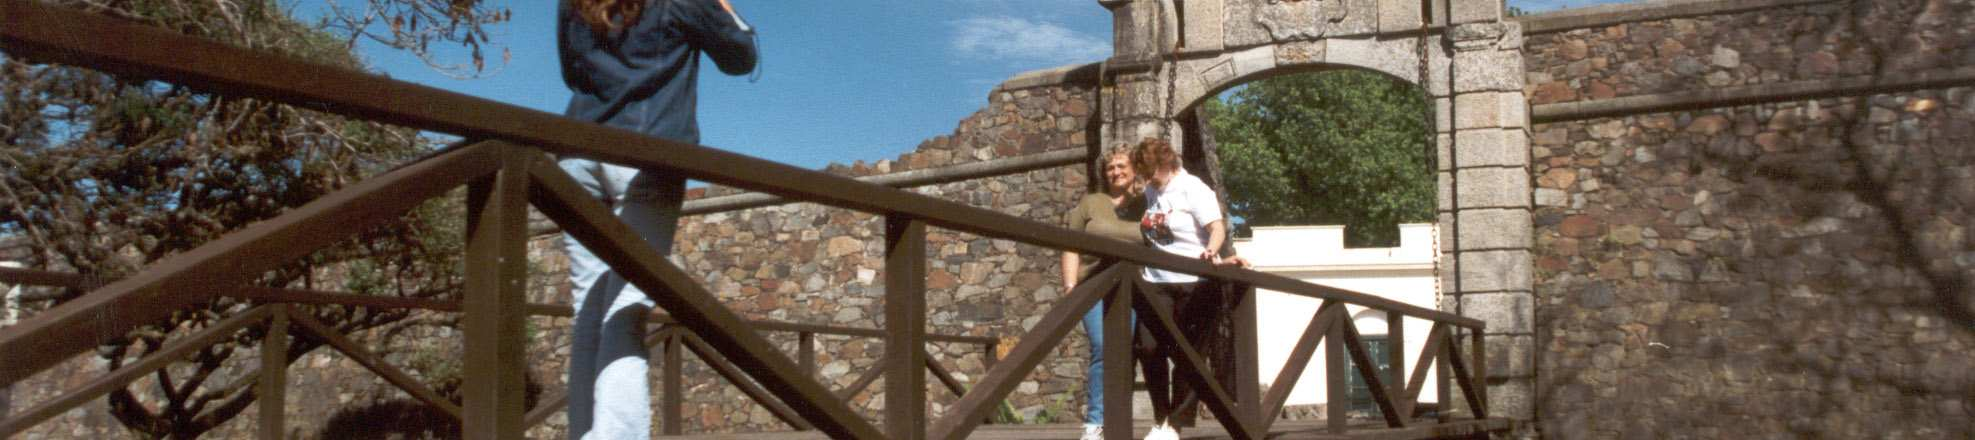 Recorreremos el núcleo histórico que aún conserva la pared de su muralla defensiva y la puerta de entrada.